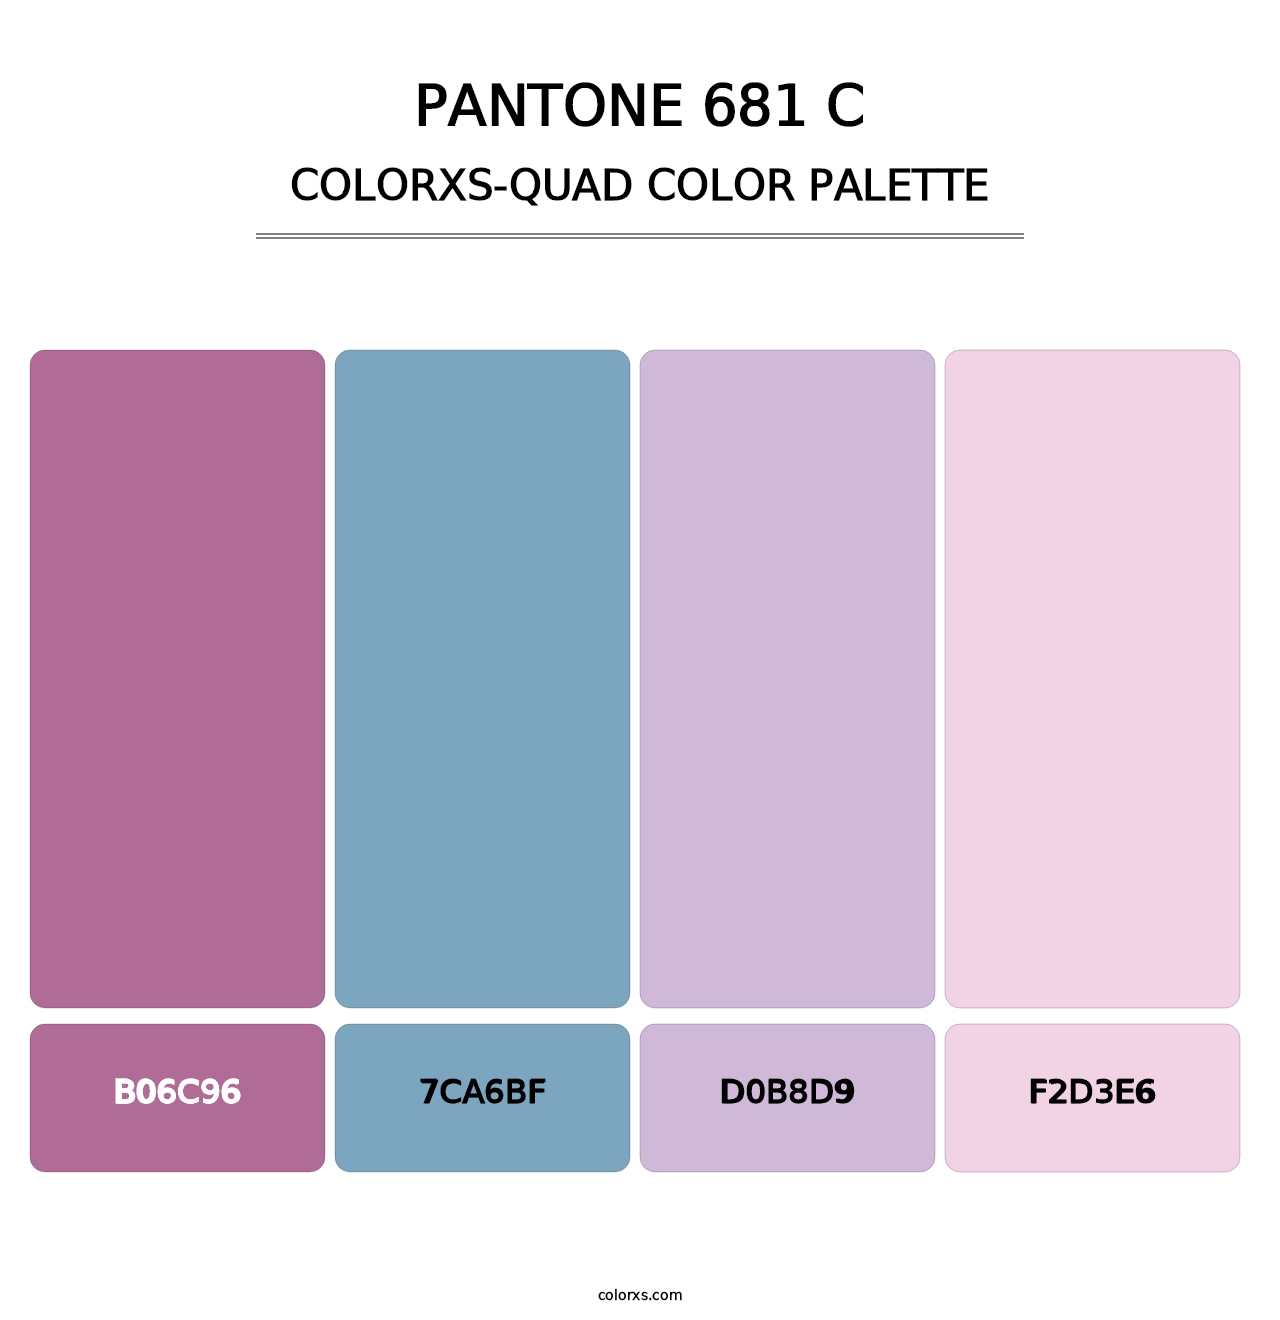 PANTONE 681 C - Colorxs Quad Palette